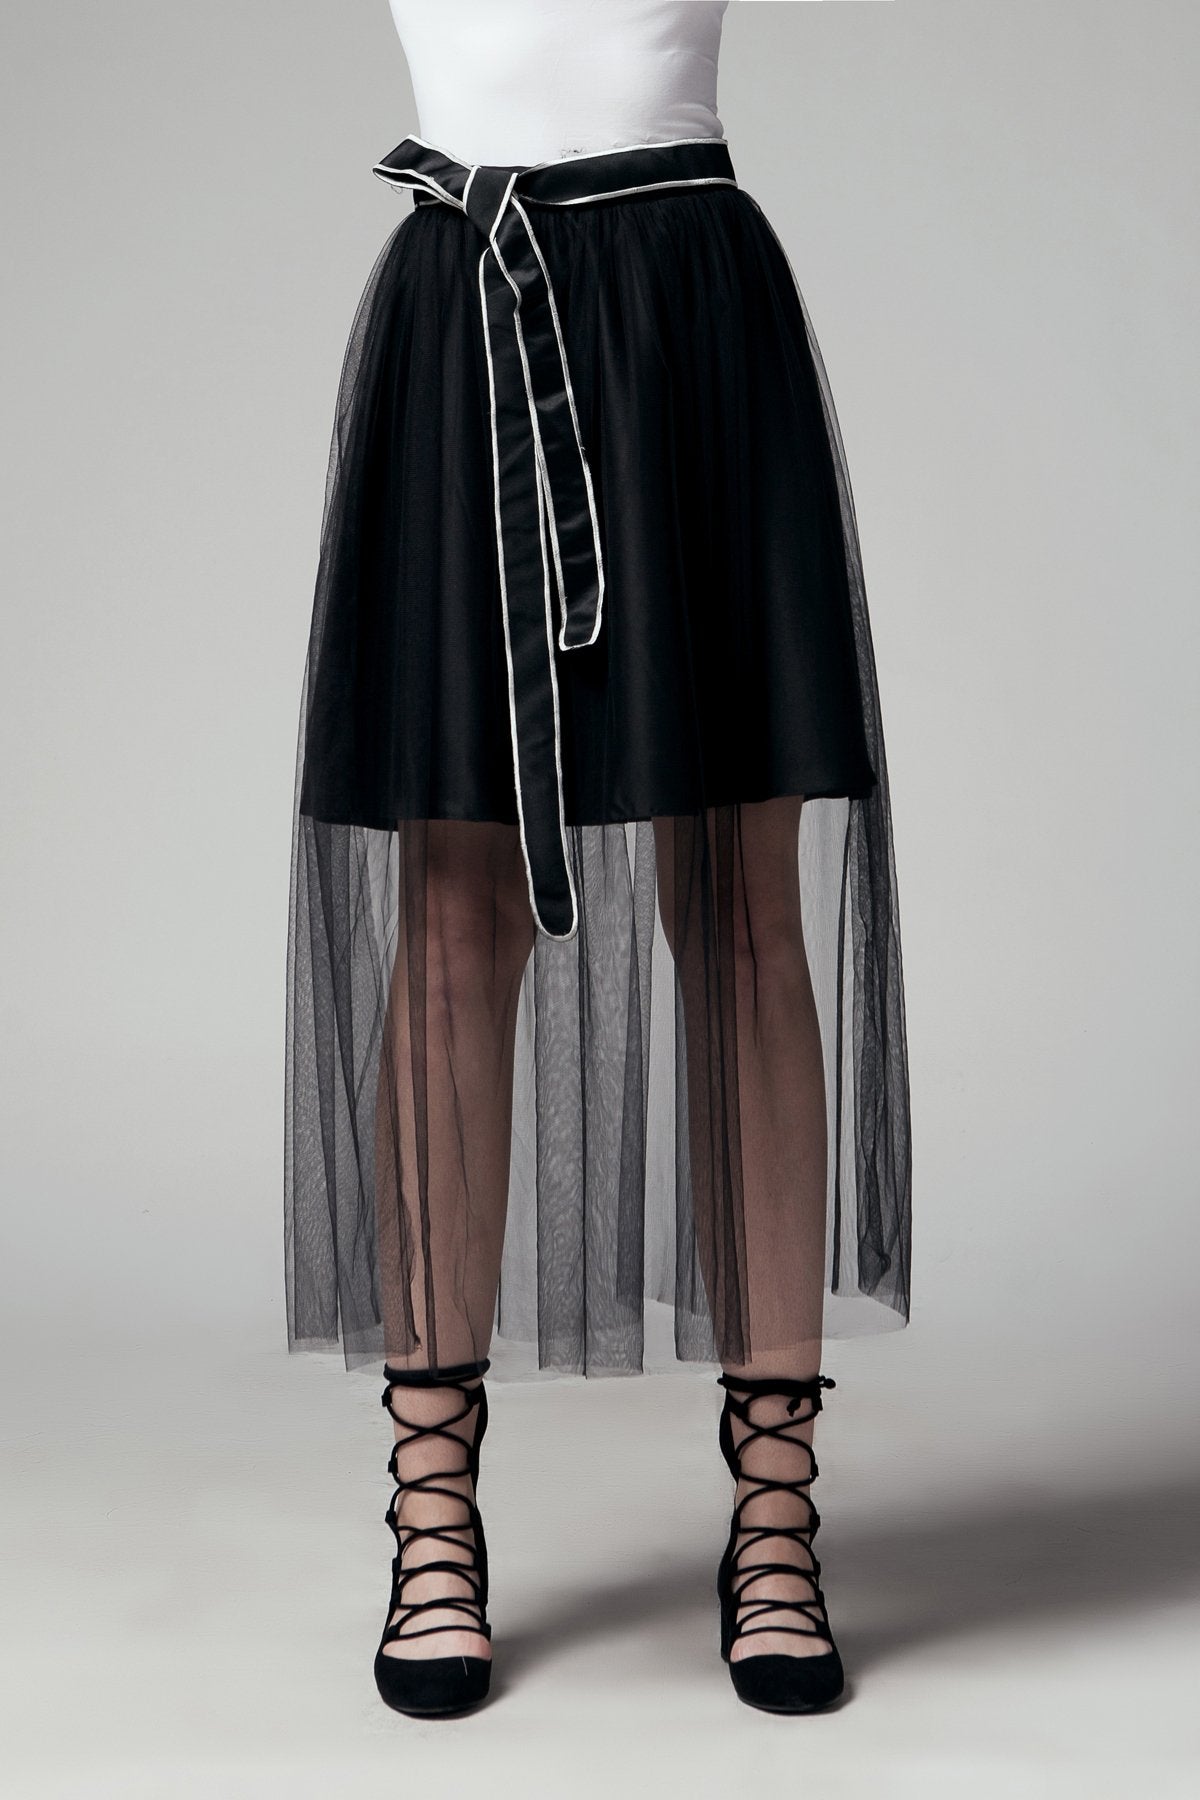 AMBER Skirt (black)